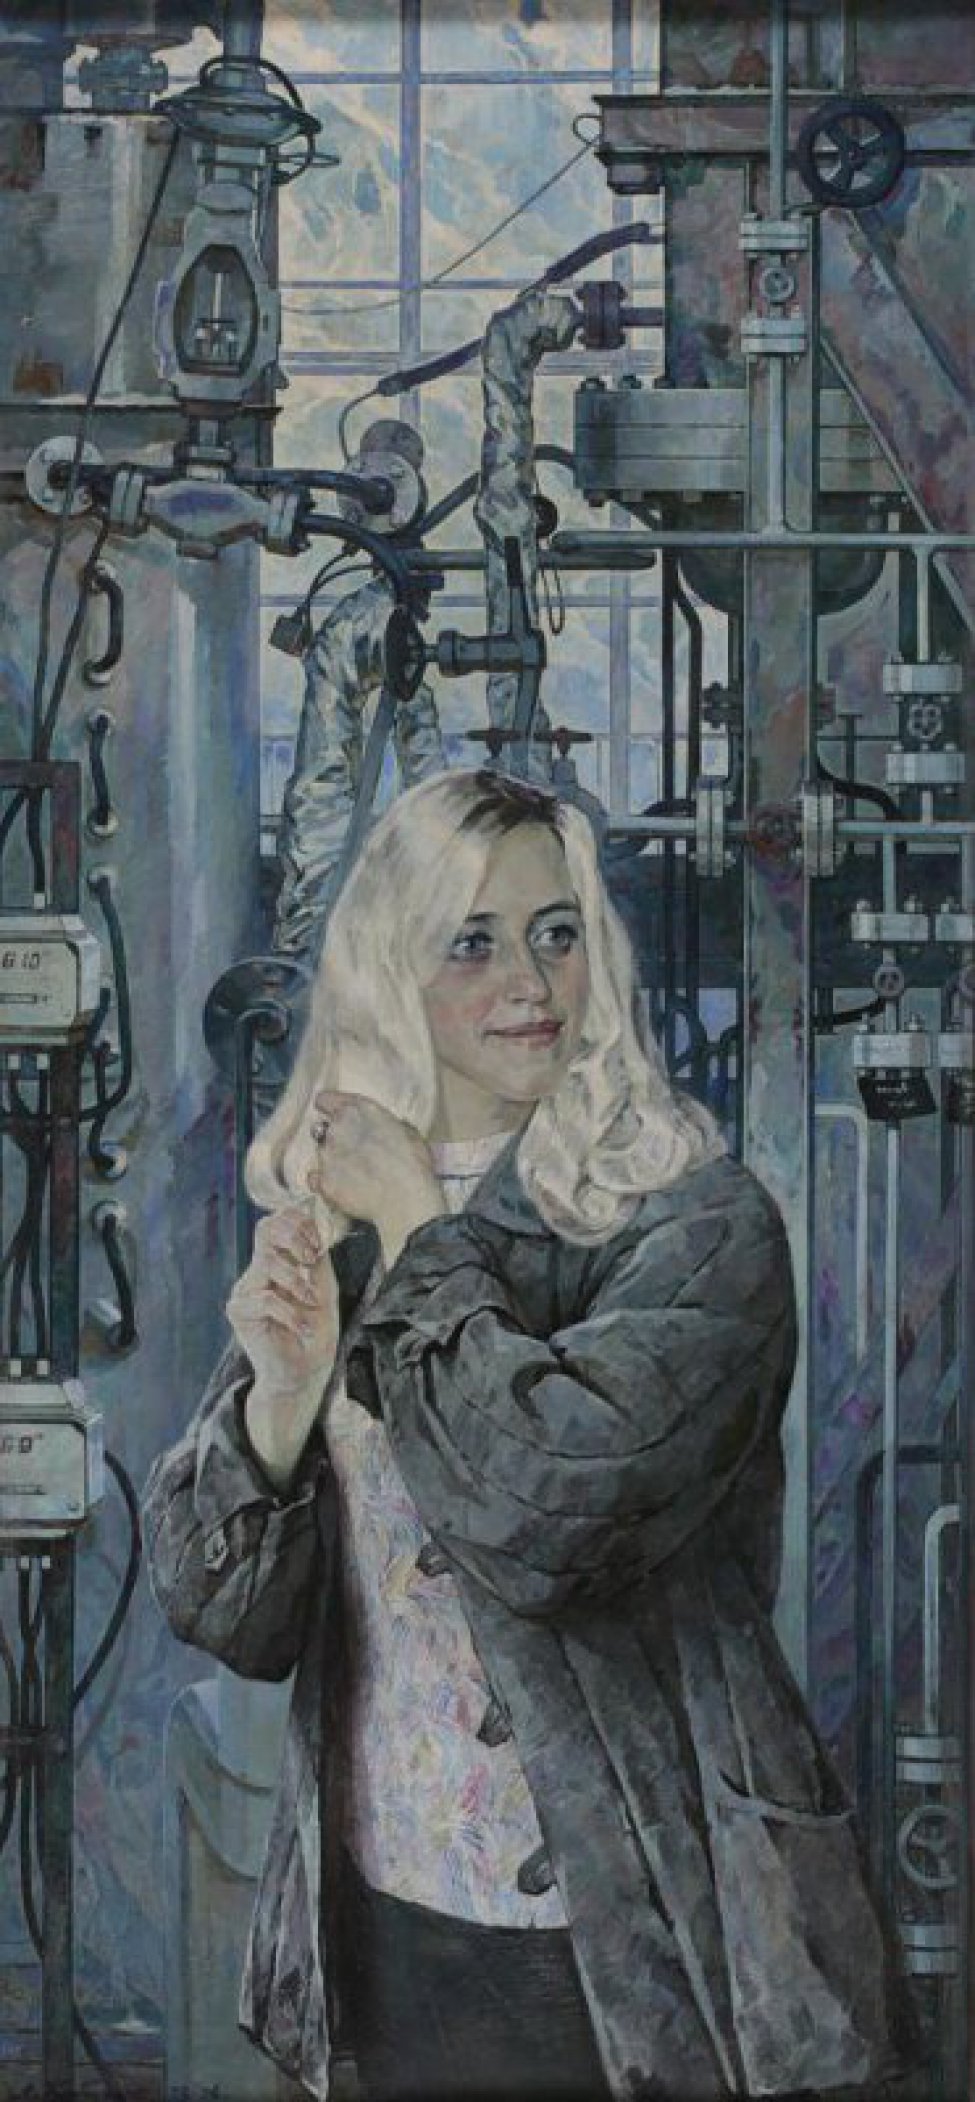 Поясное изображение молодой женщины с распущенными светлыми волосами до плеч, одетая в стеганую серую куртку.женщина изображена на фоне сложных, производственных химических установок.